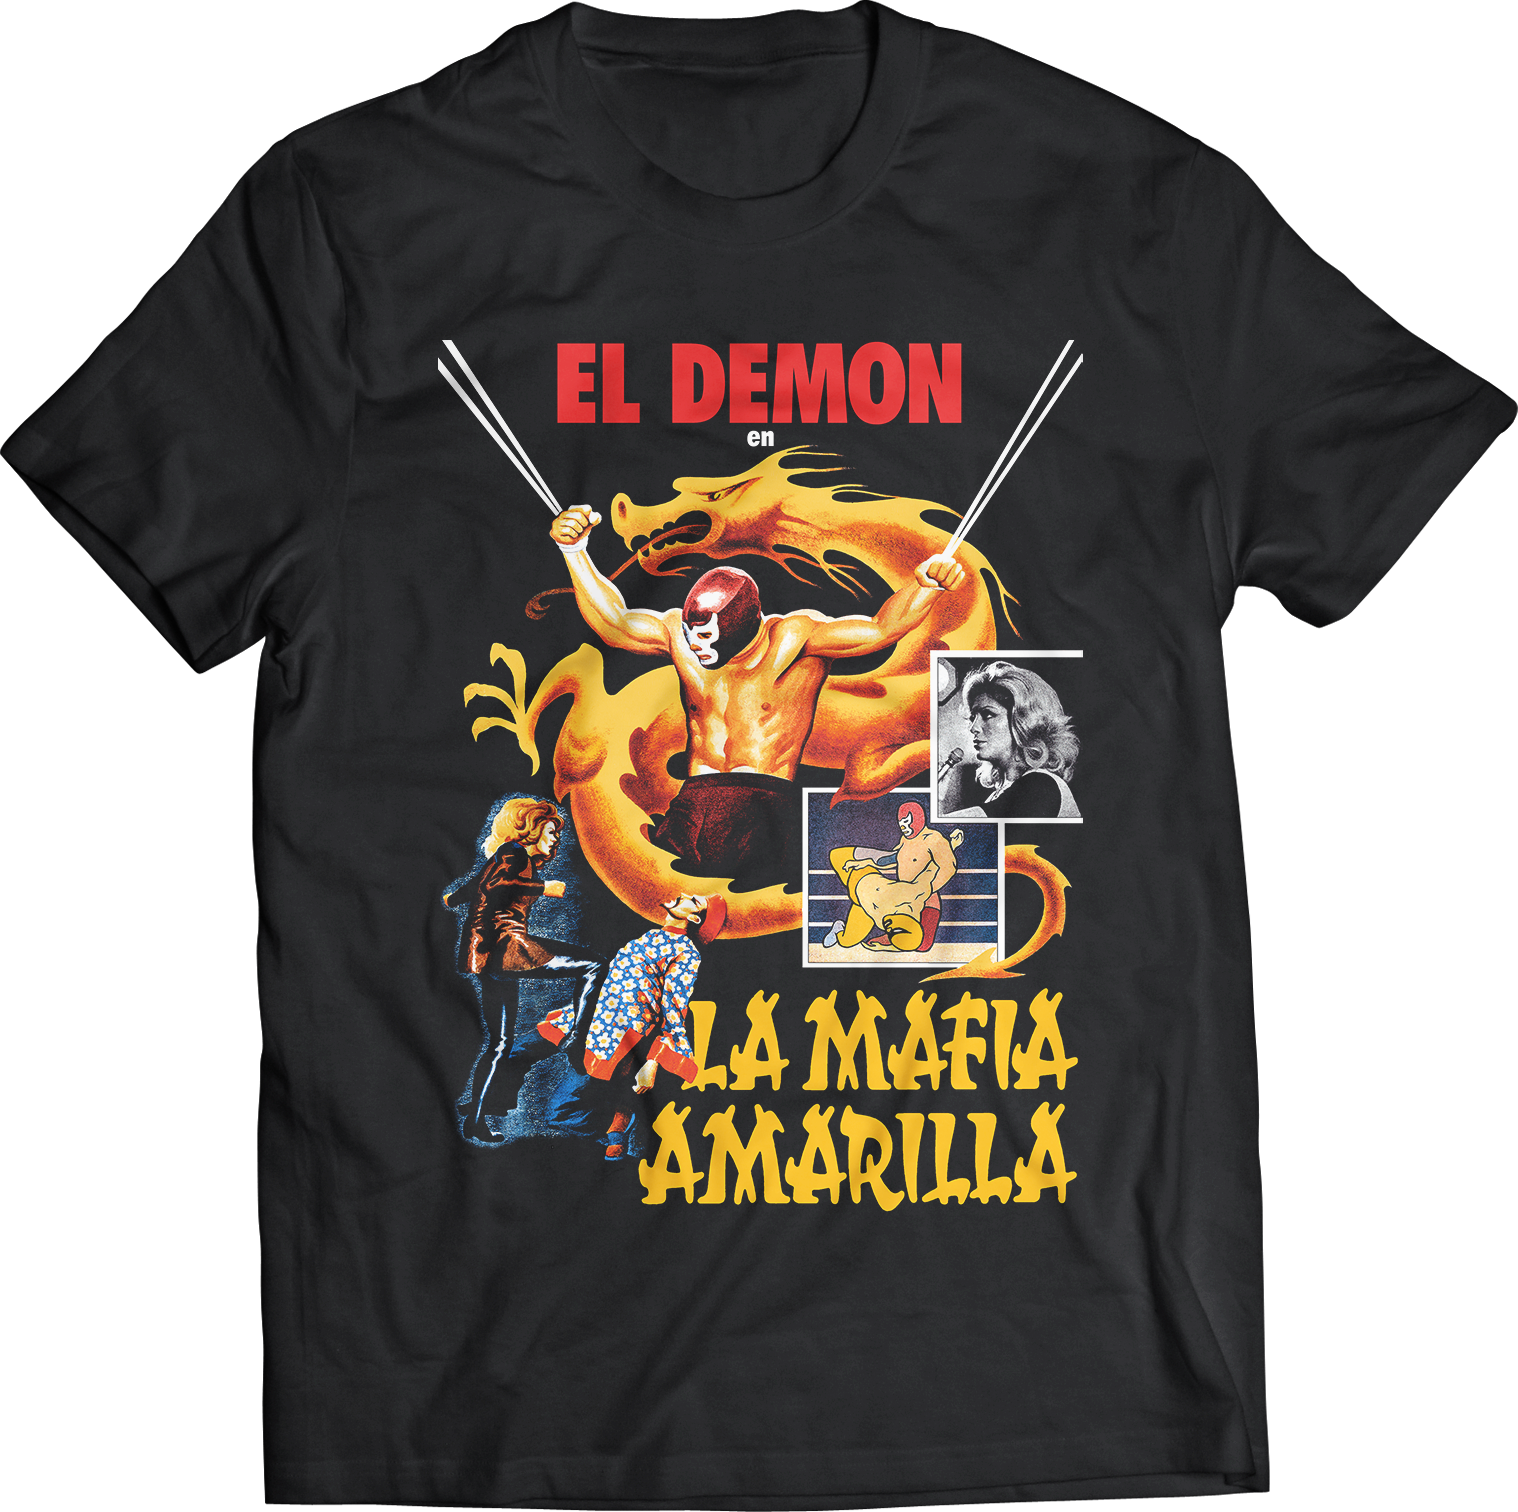 ATOM AGE: LOS LUCHADORES "EL DEMON VS LA MAFIA AMARILLA" T-SHIRT